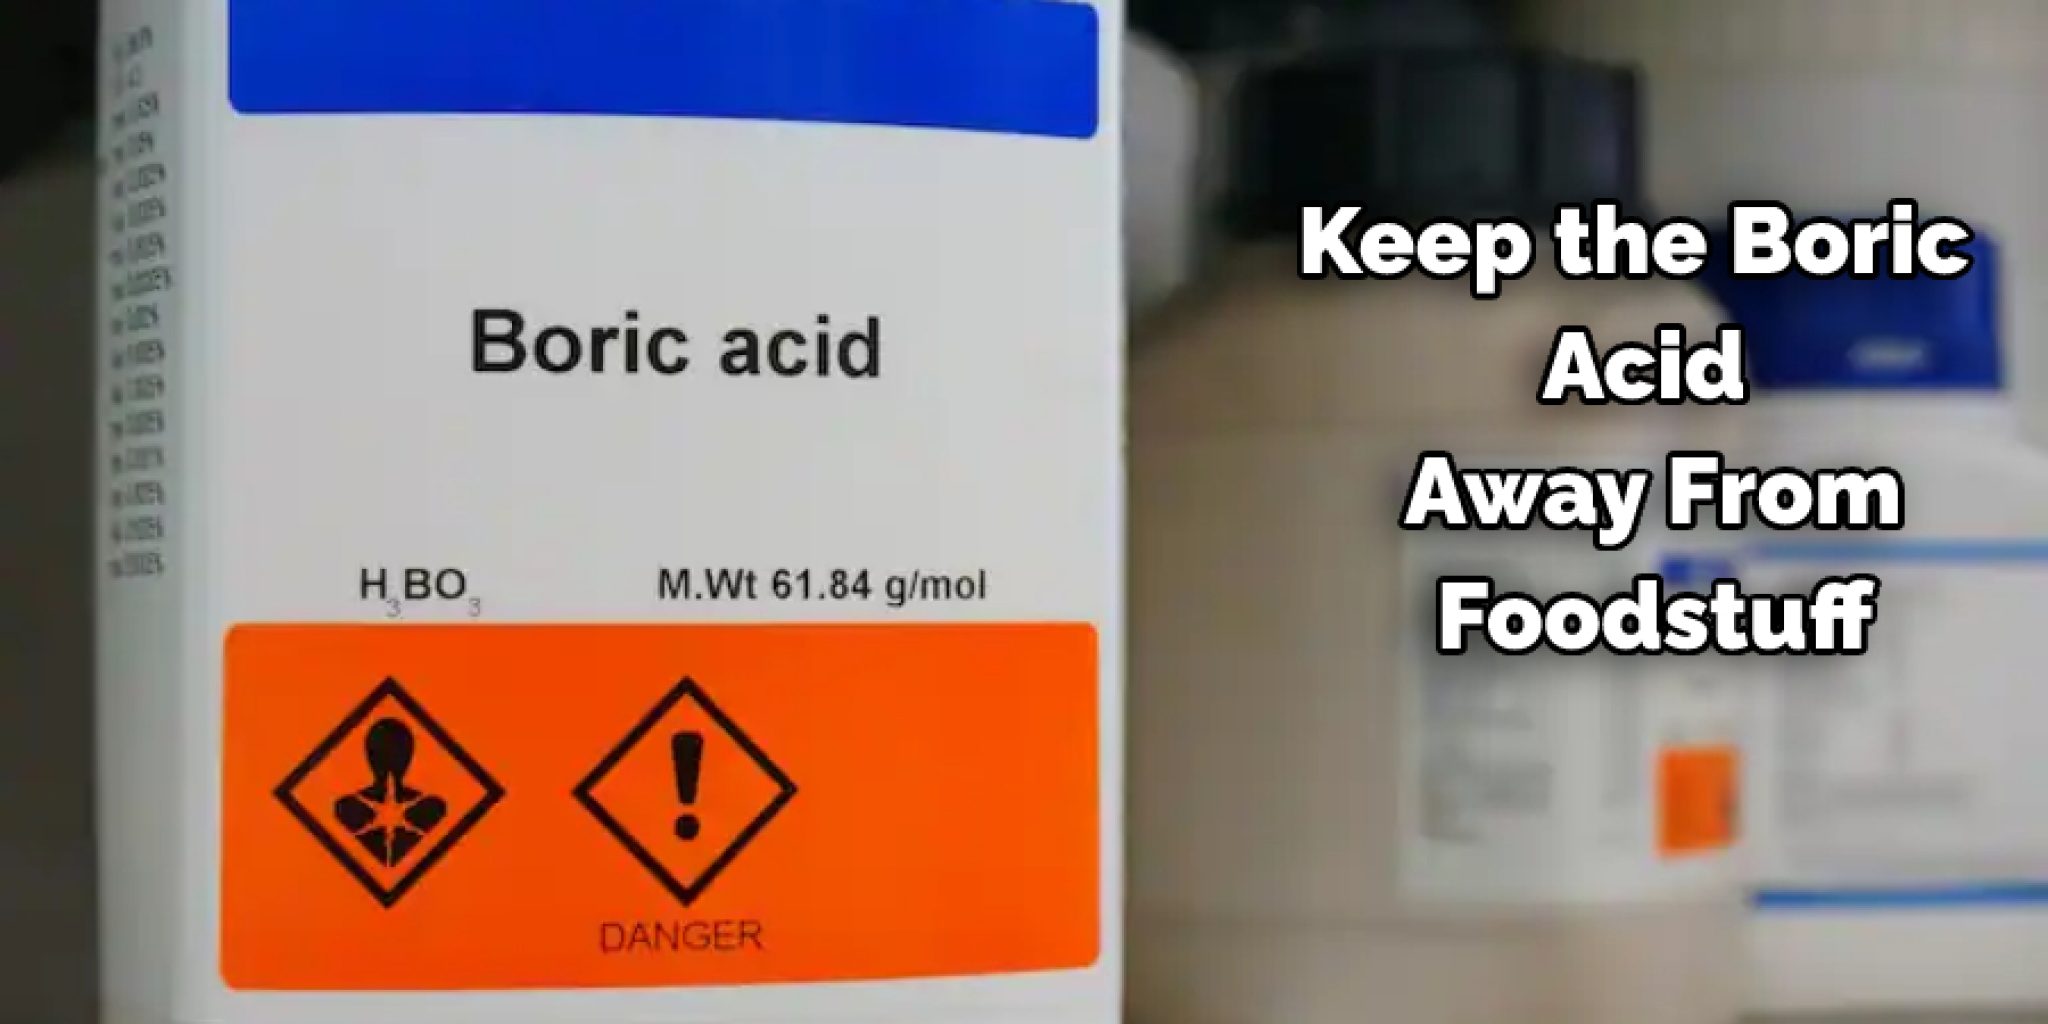 Keep The Boric Acid Away From Foodstuff 2048x1024 